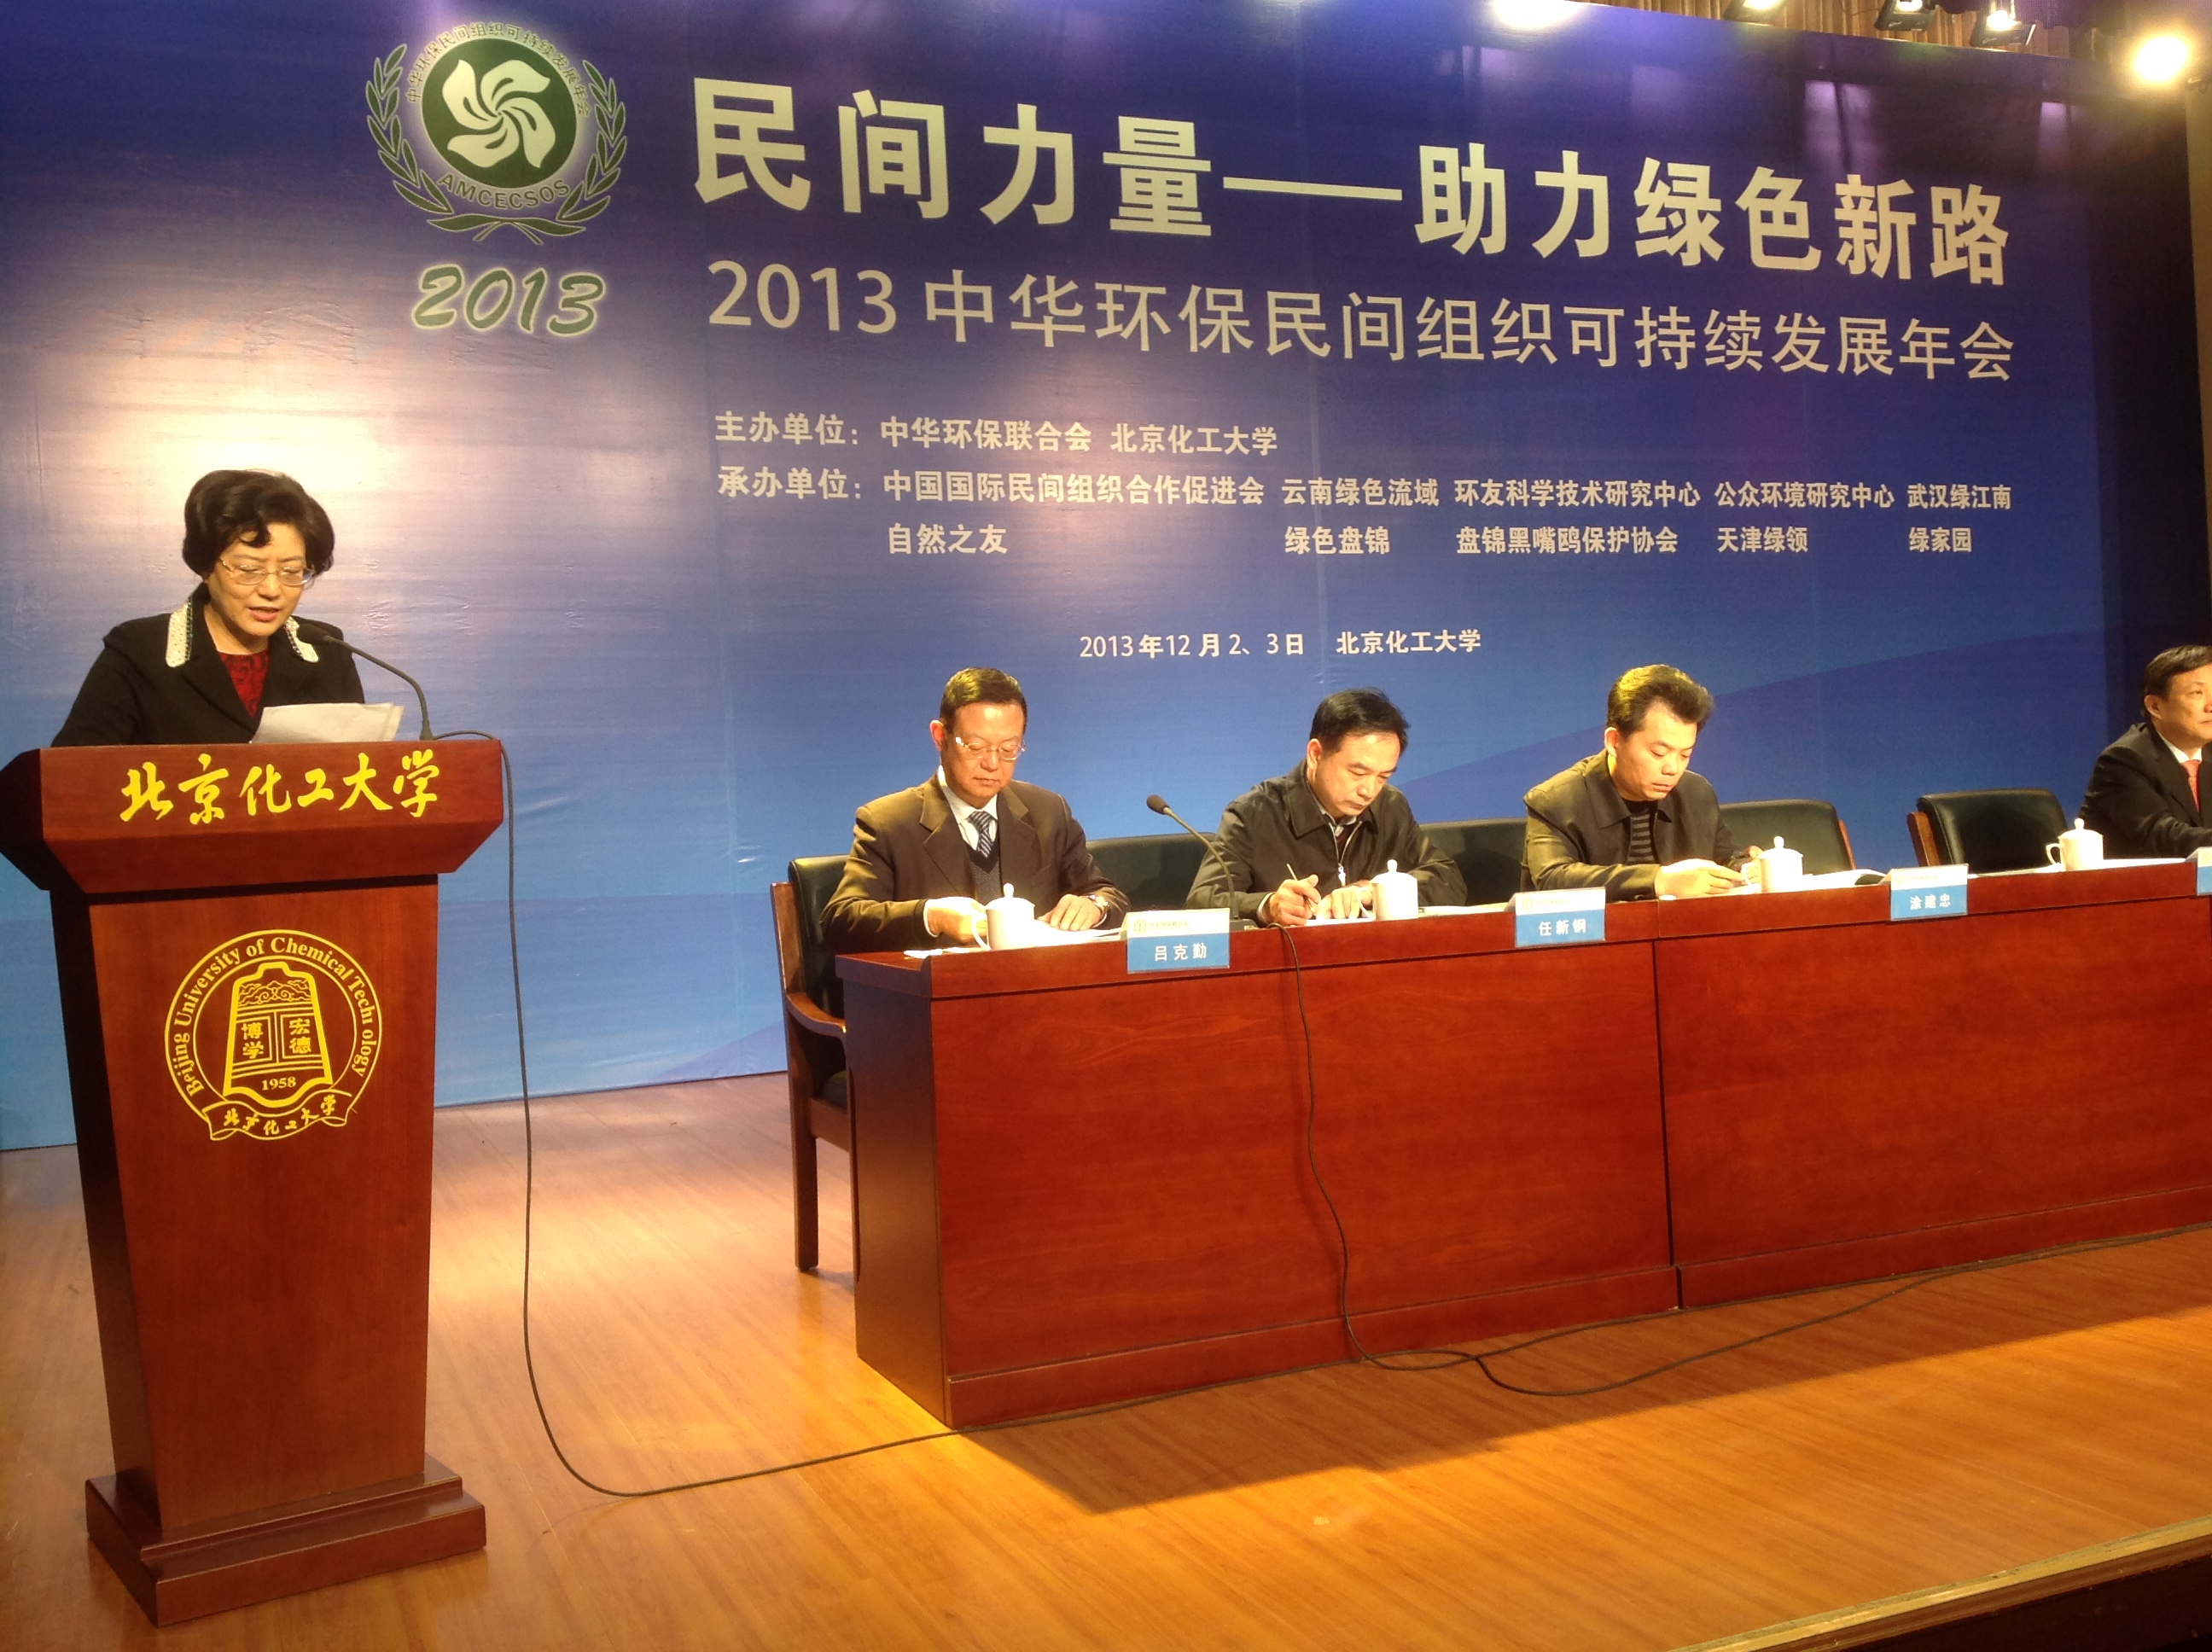 绿色卫士黎峰参加2013年中华环保联合会年会.jpg